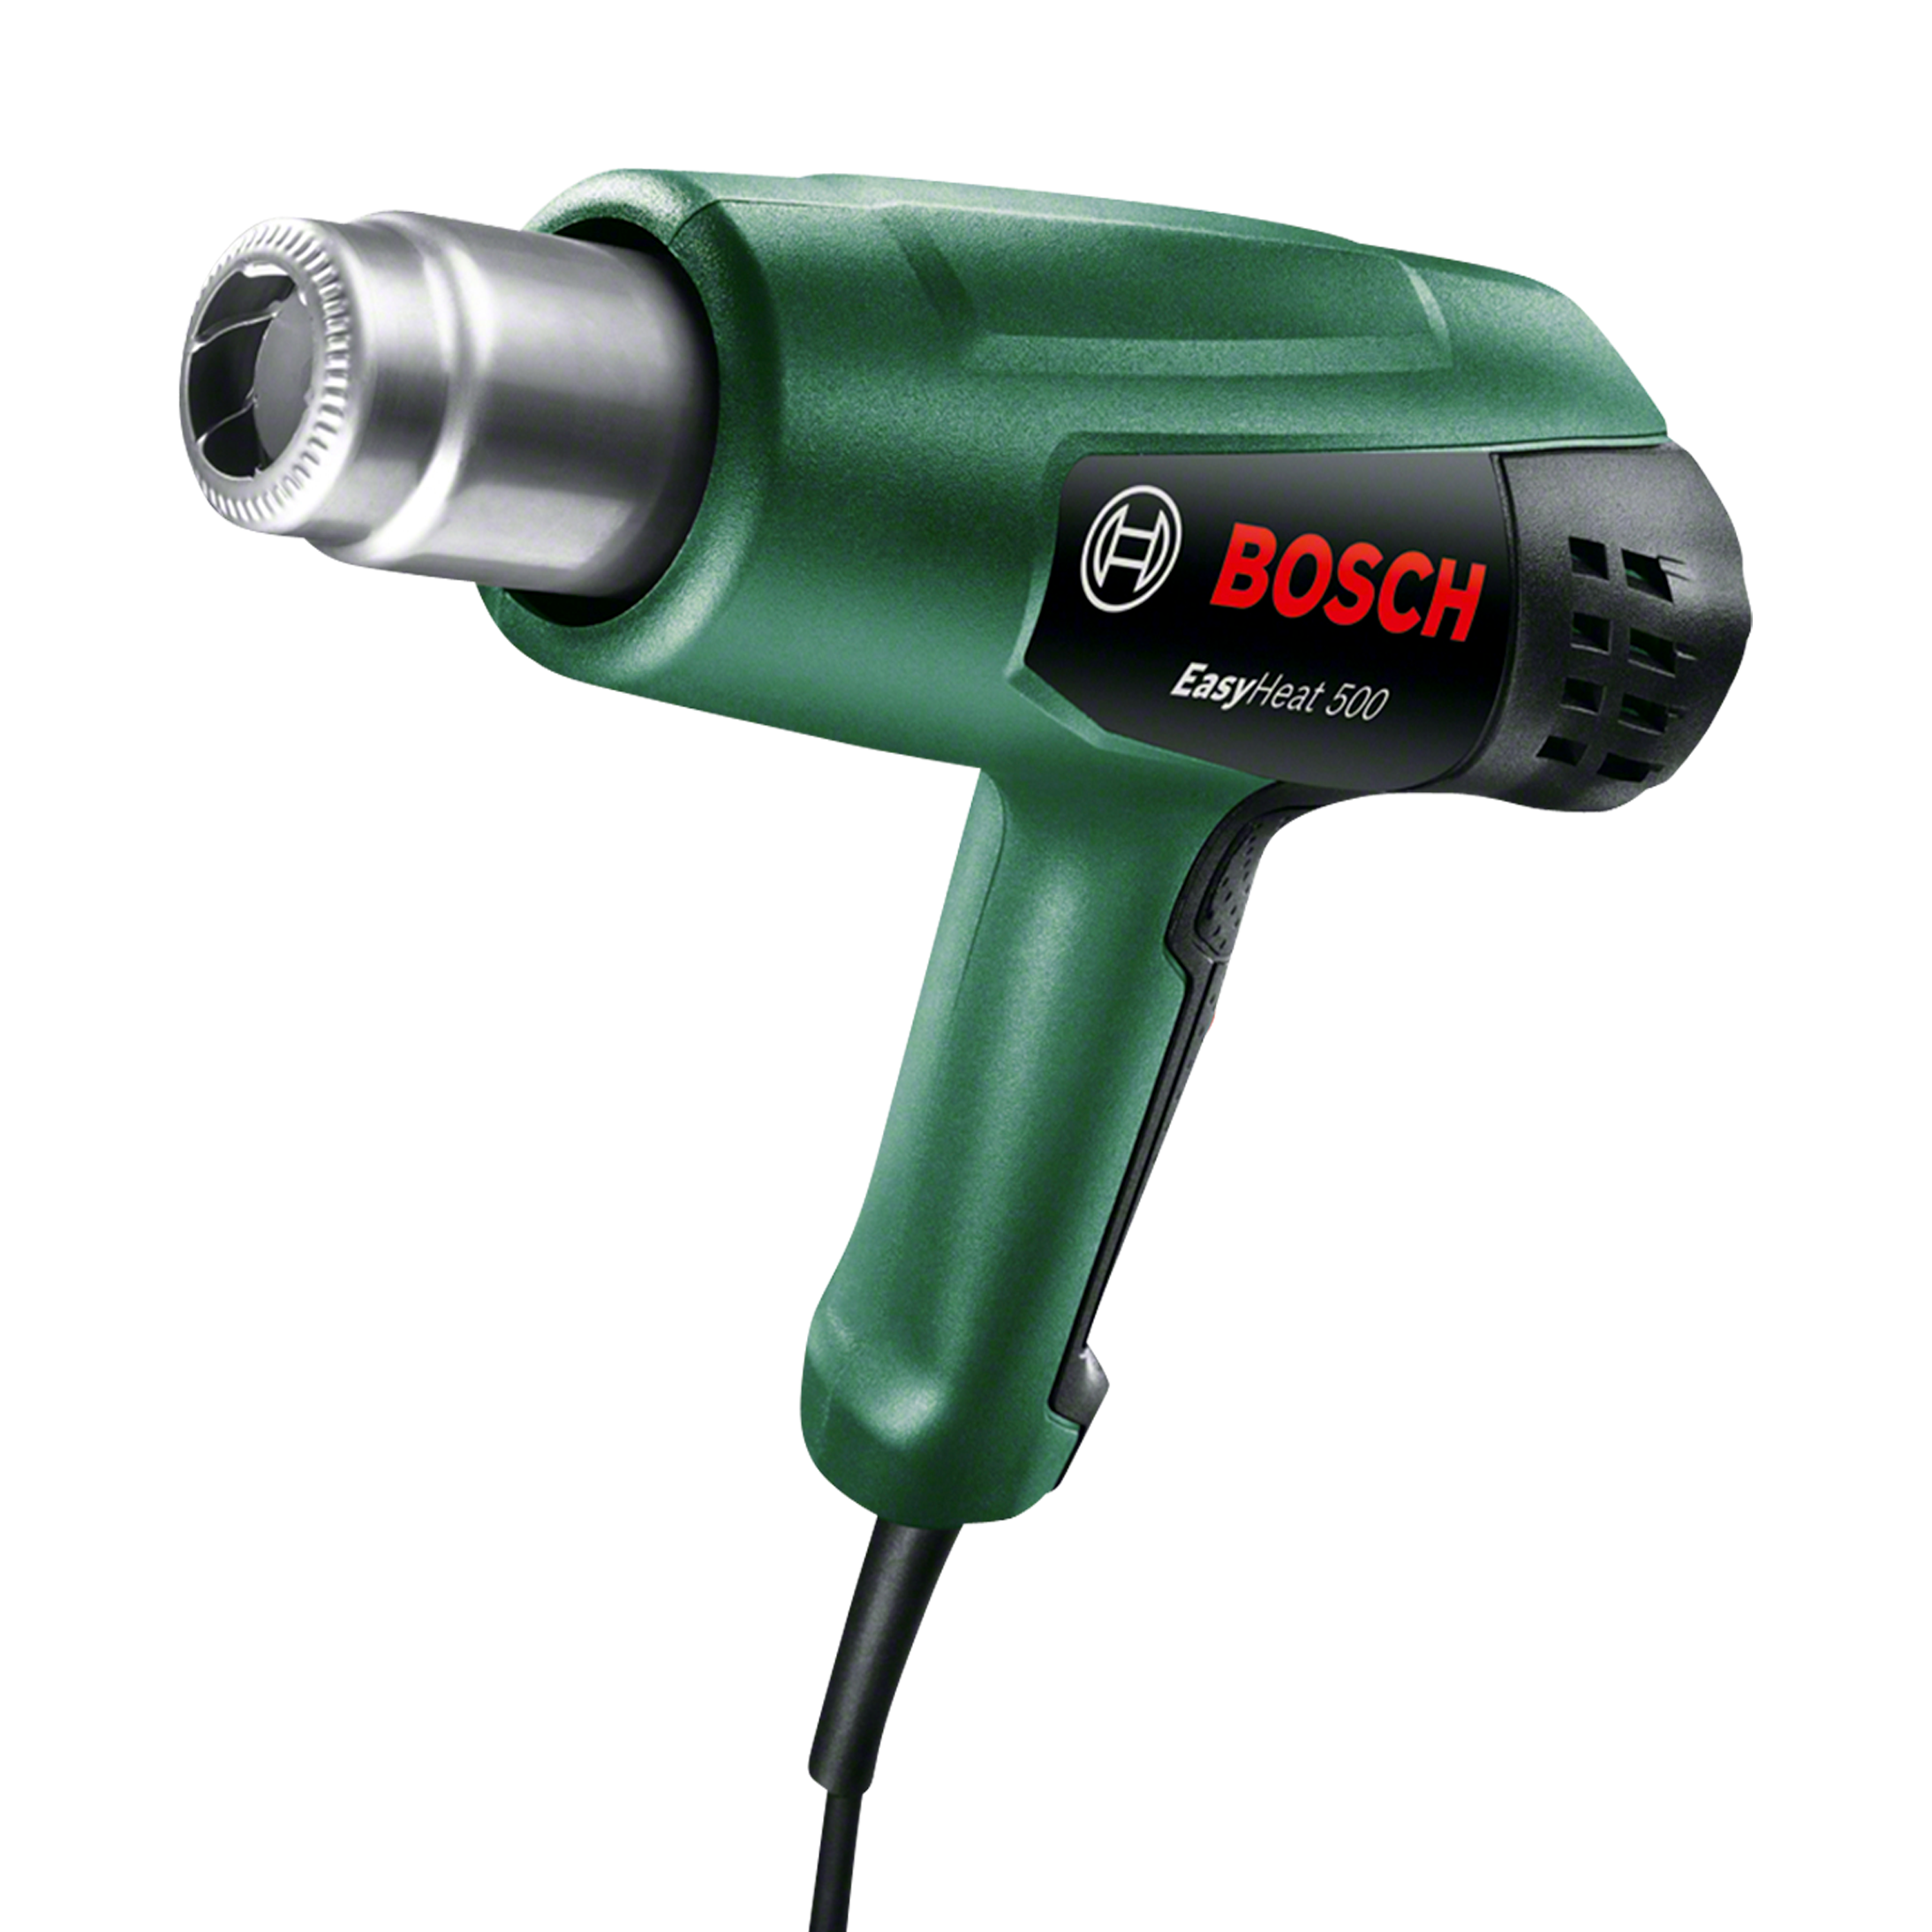 Bosch Warmtepistool Bosch Easyheat 500  - Niet gespecificeerd